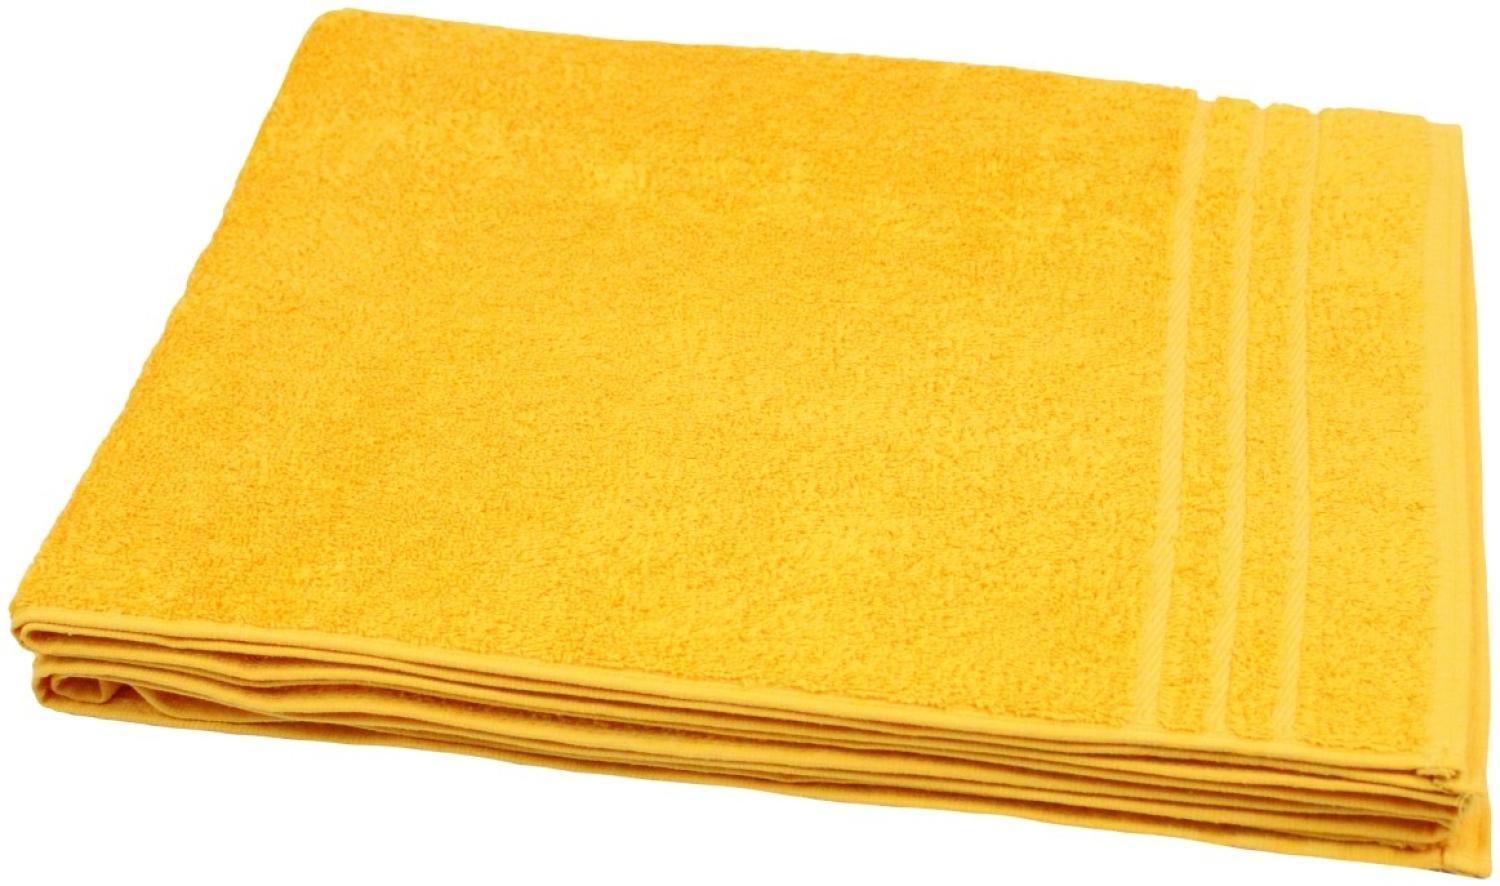 Handtuch 50x100 cm, 500g/m² orange / gelb Bild 1